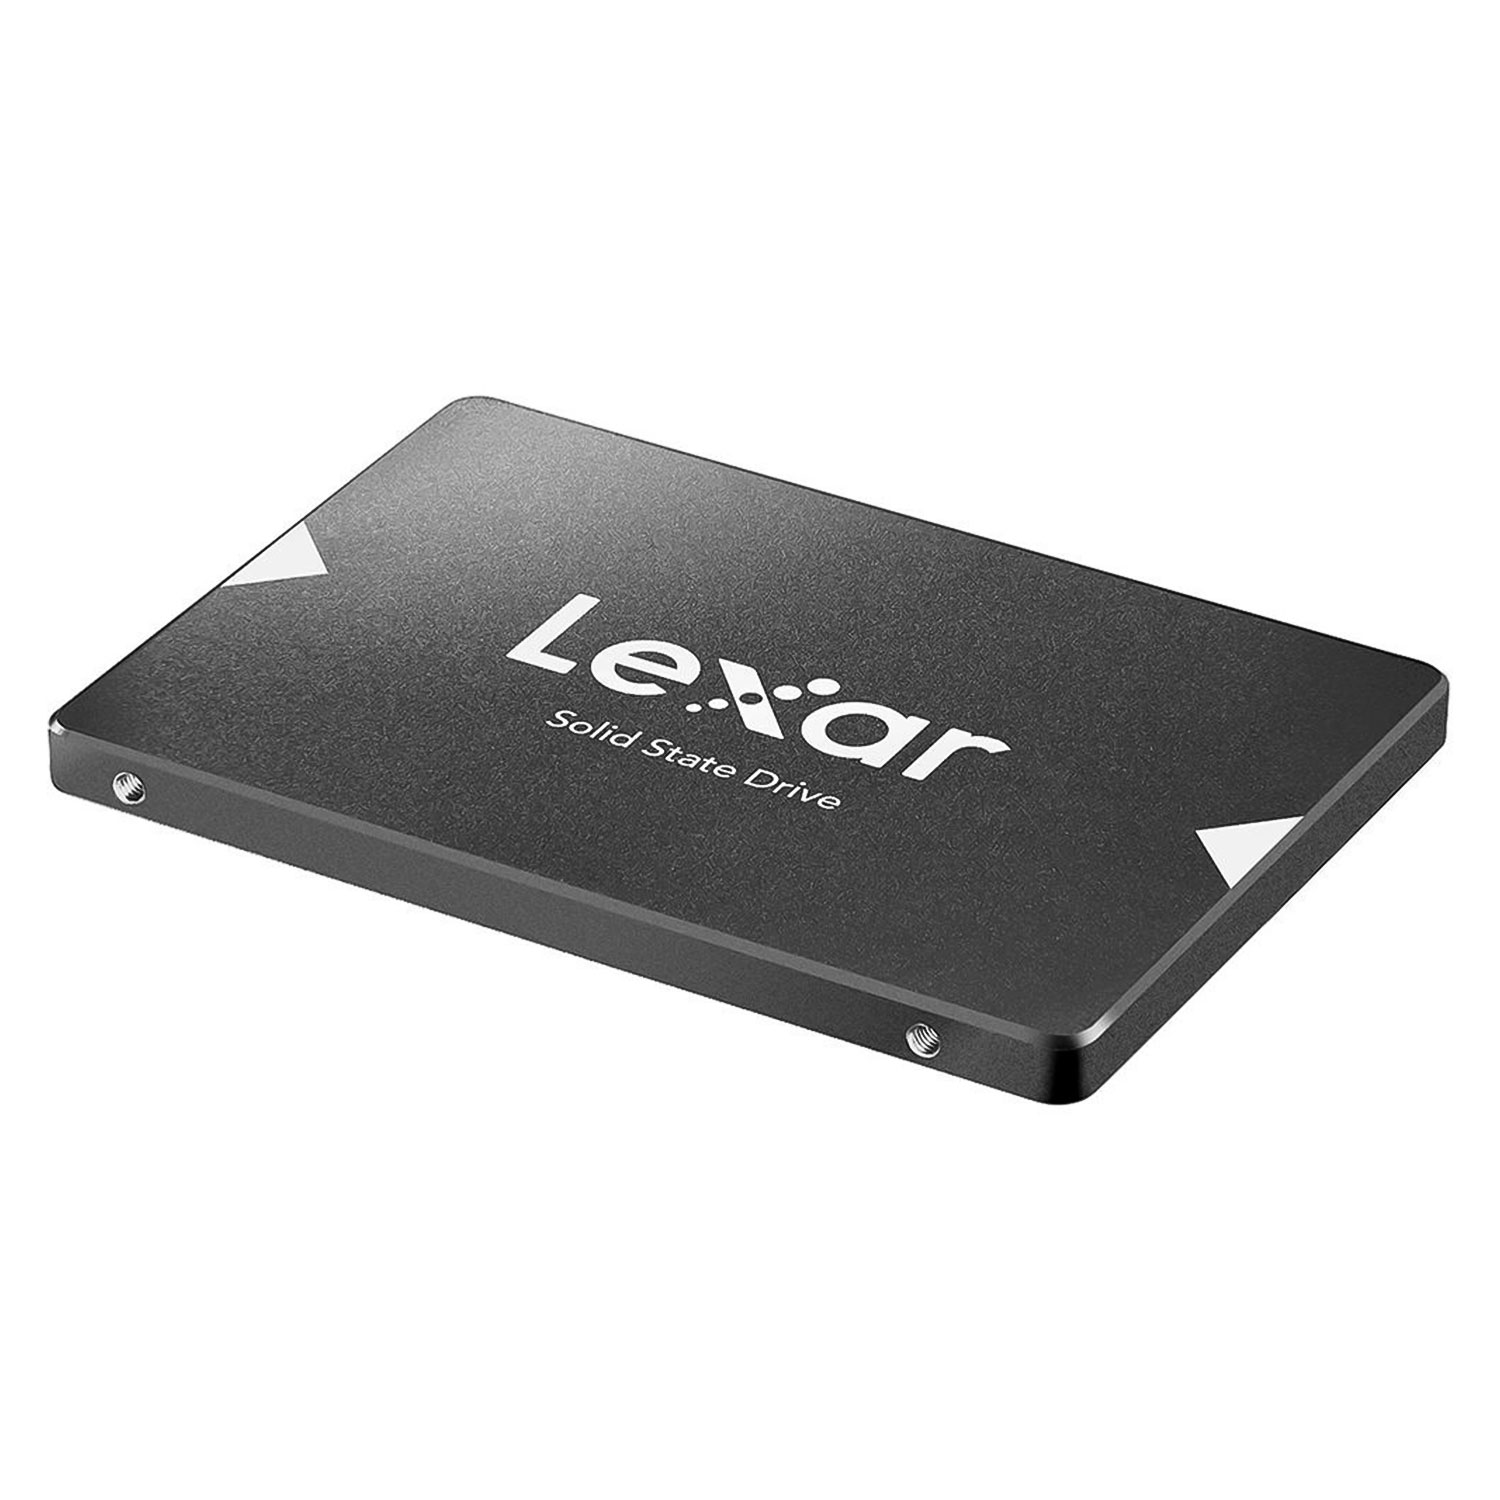 SSD Lexar 256GB NS100 2.5" SATA 3 - LNS100-256RBNA